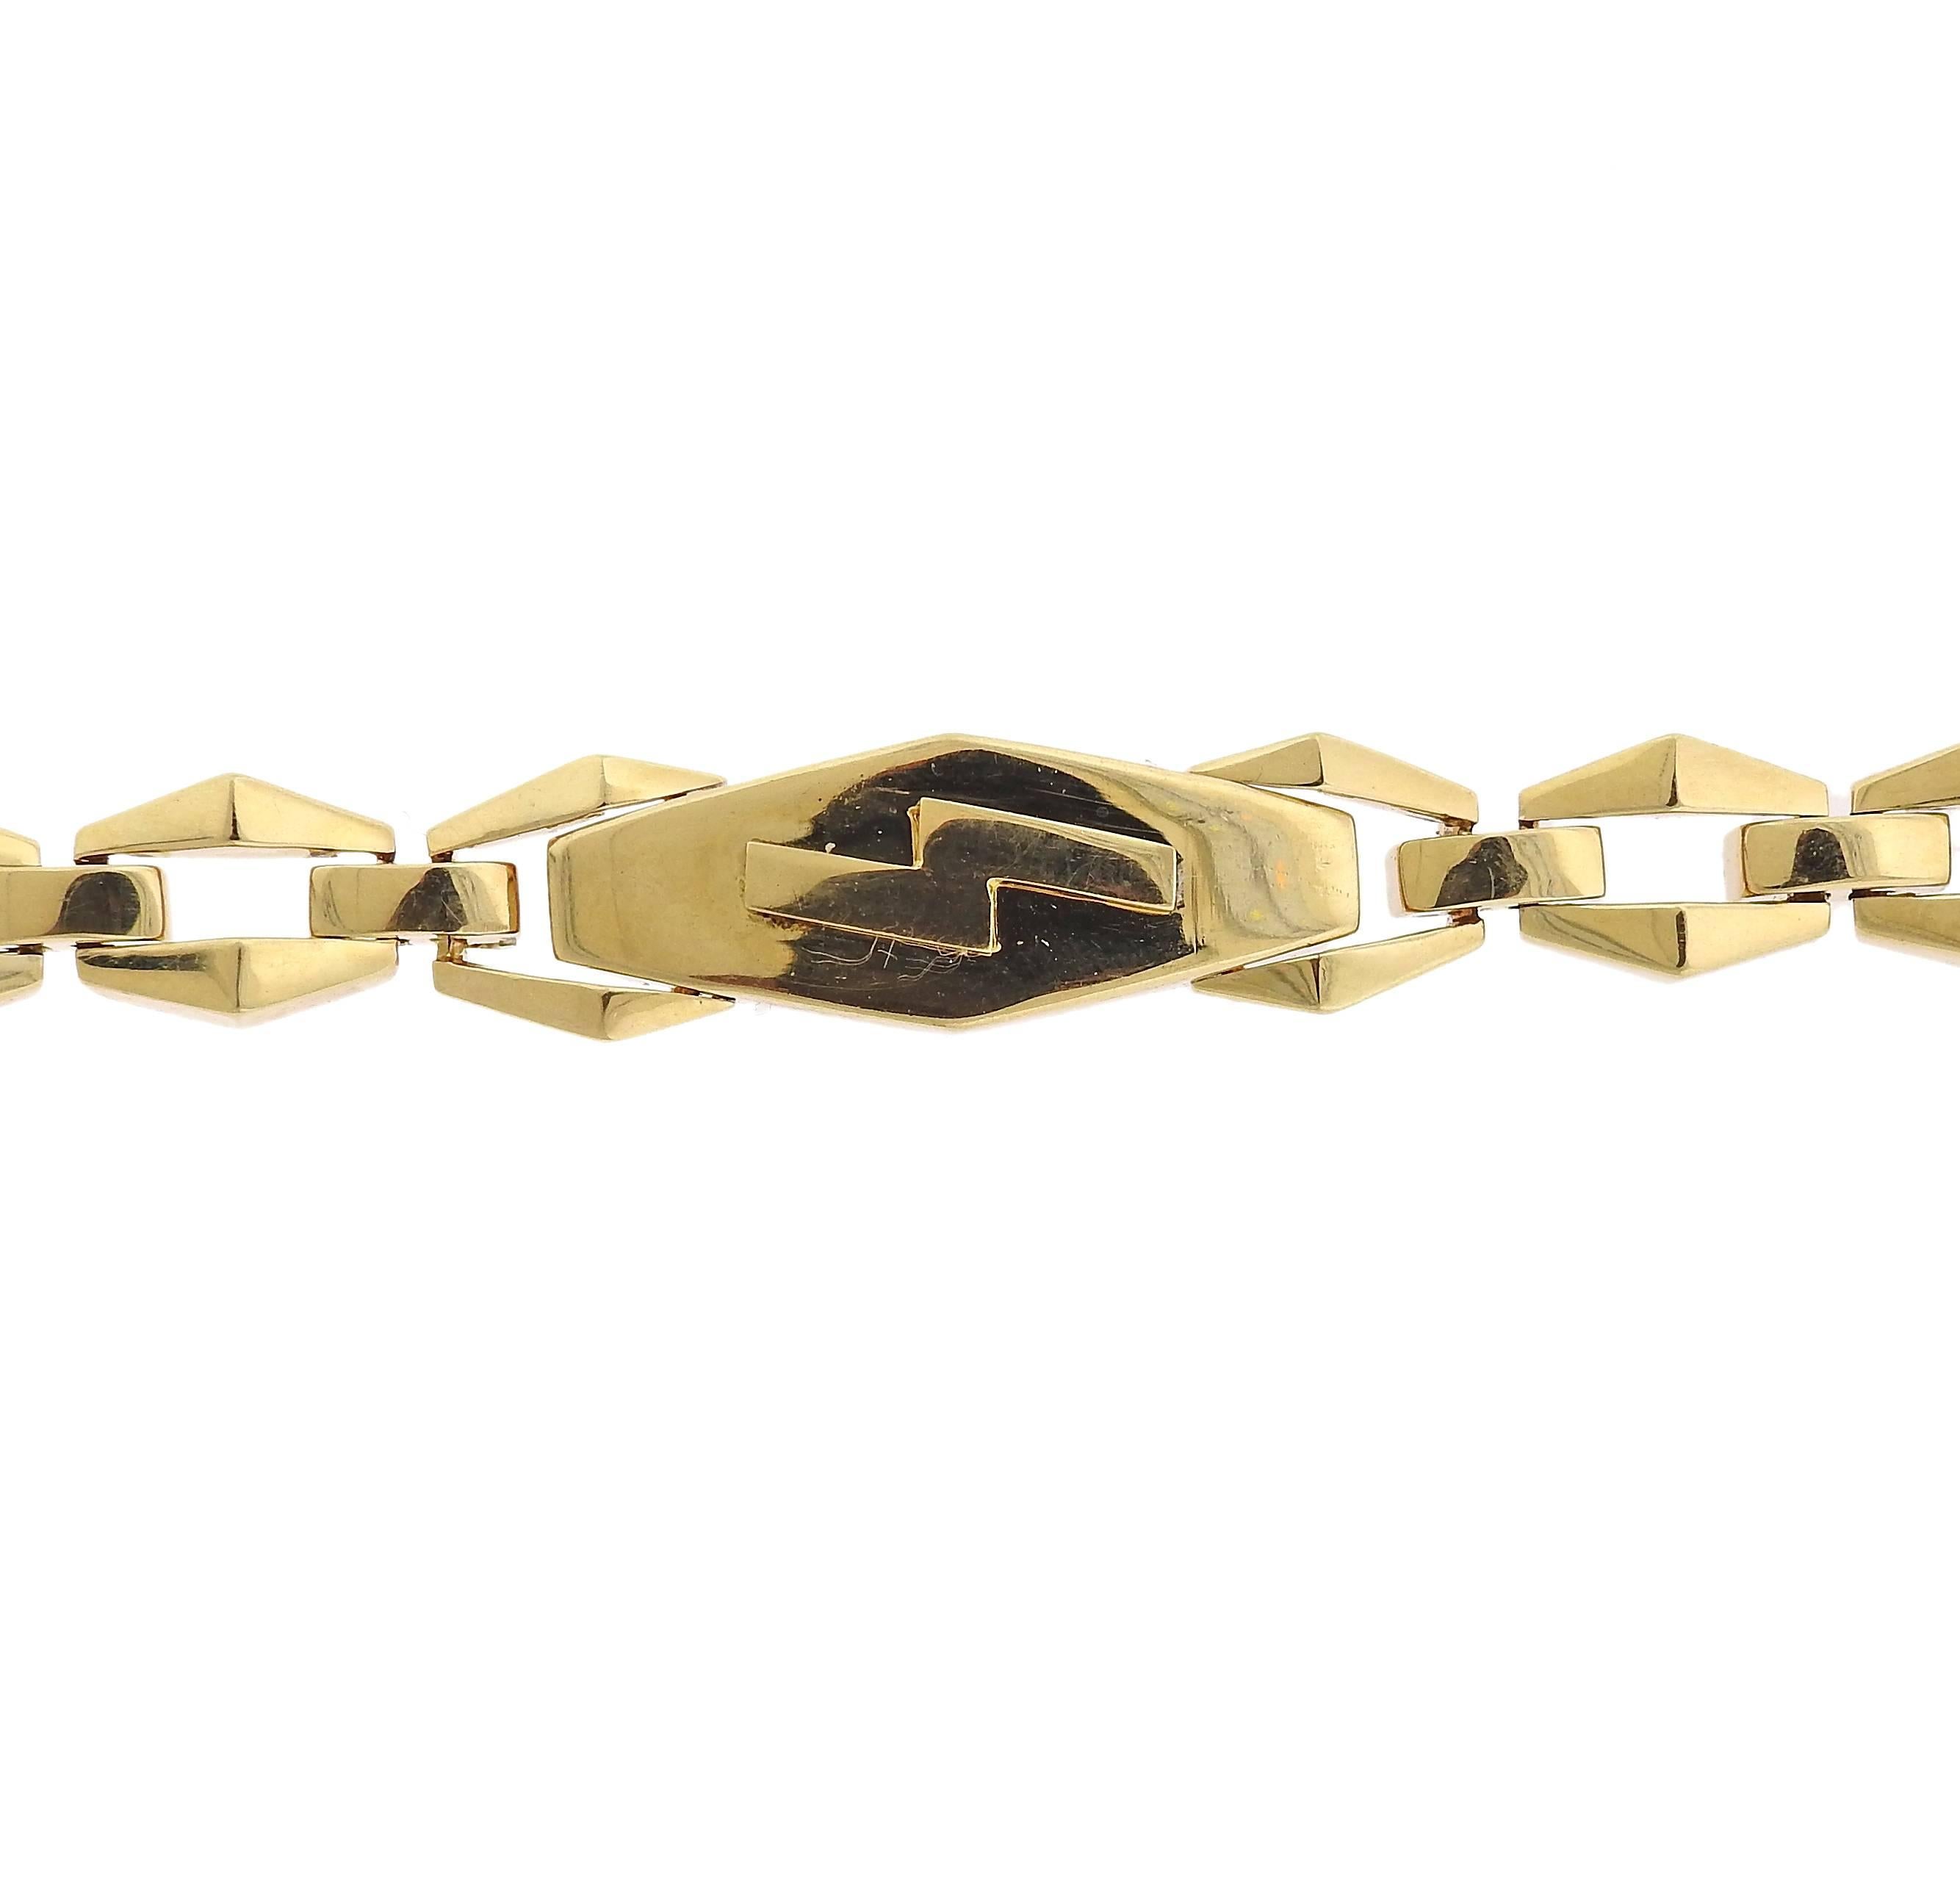 An 18k gold link bracelet crafted by David Webb. Bracelet measures 6 1/2